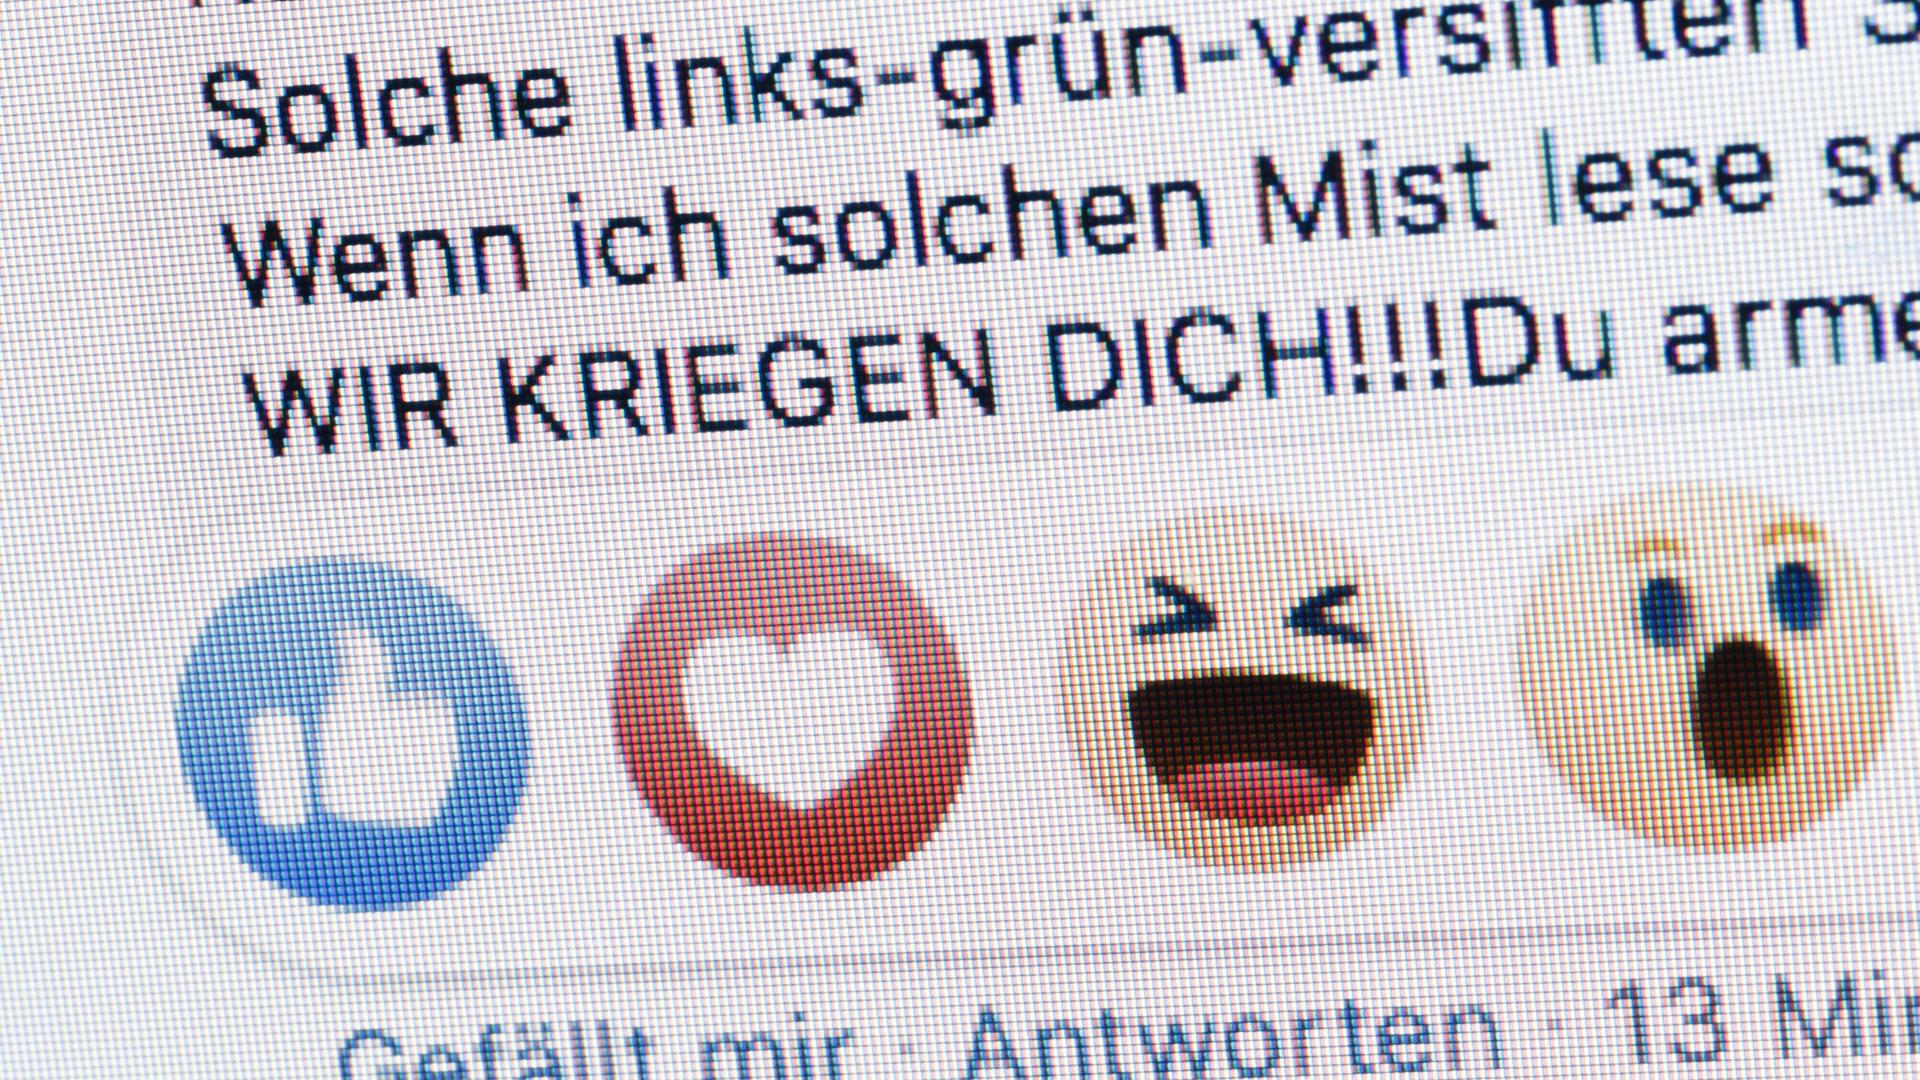 Symbolfoto: Neben dem "Gefällt mir Button" von Facebook sind die Worte "Wir kriegen dich zu sehen".